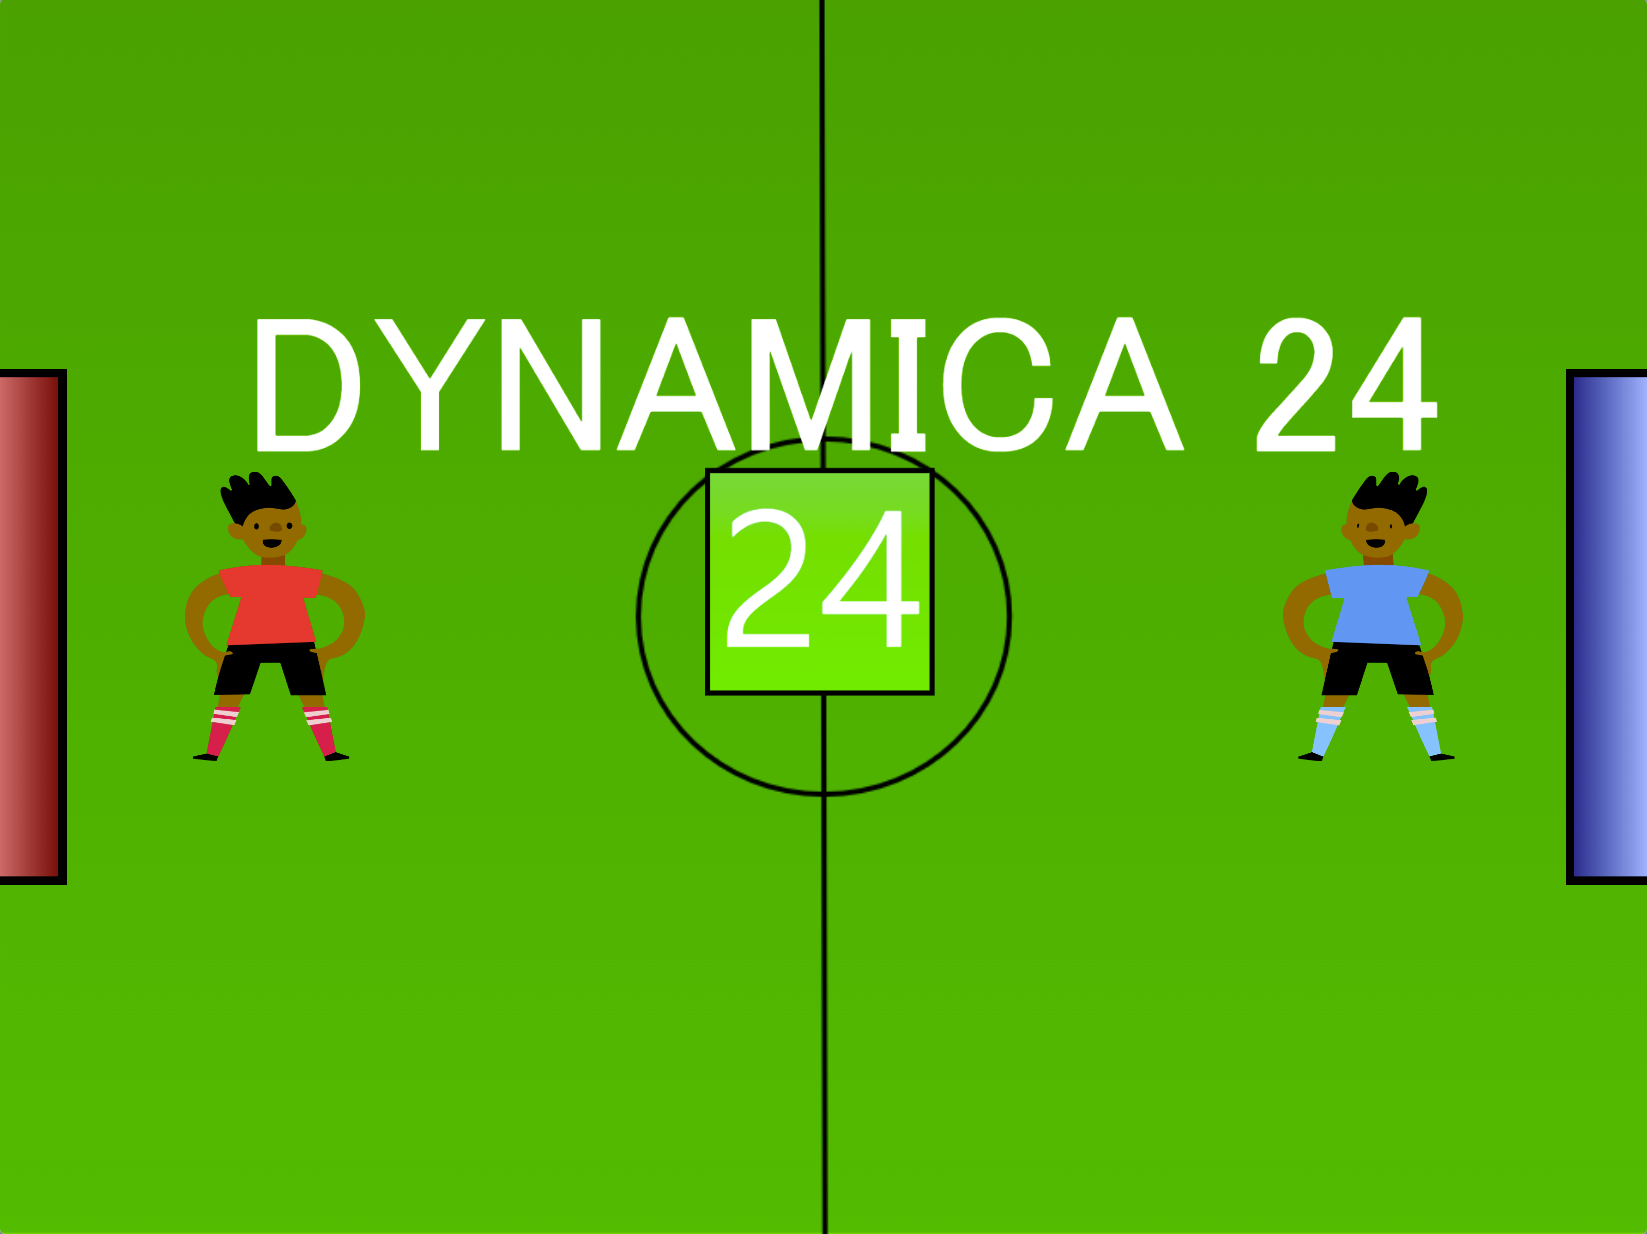 DYNAMICA 24